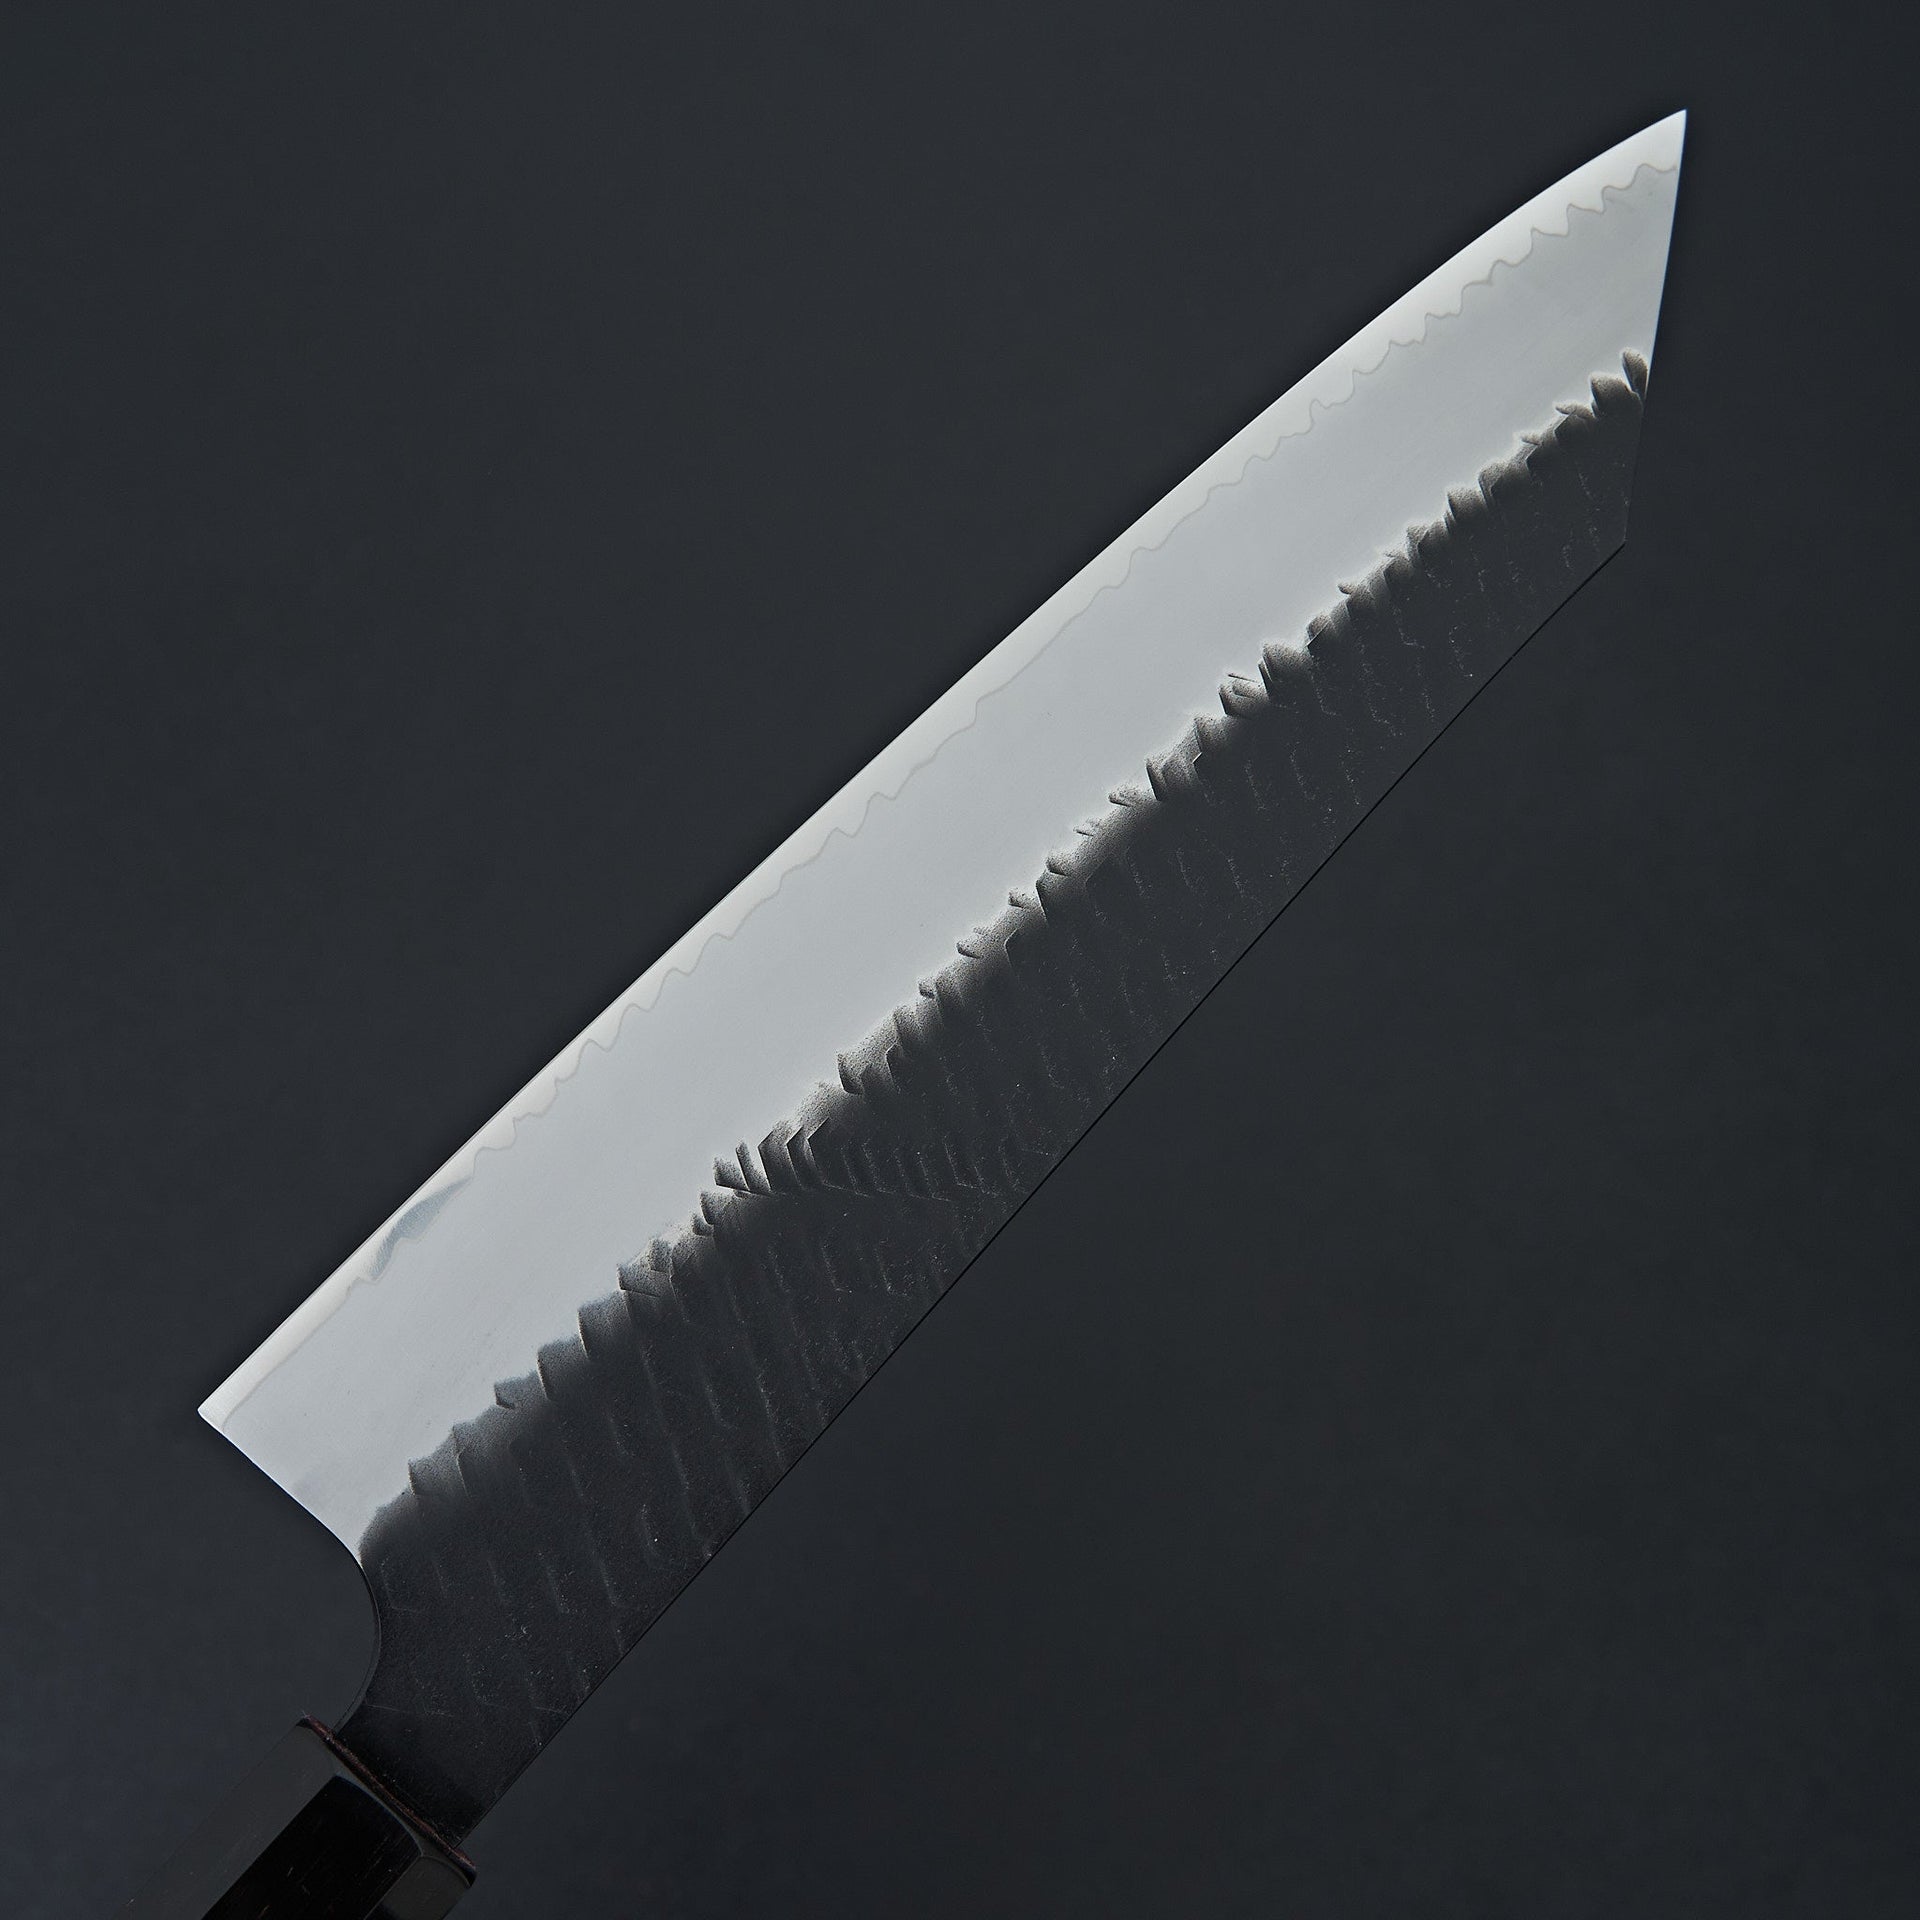 Nigara Hamono SG2 Kurouchi Tsuchime Kiritsuke Gyuto 240mm-Knife-Handk-Carbon Knife Co